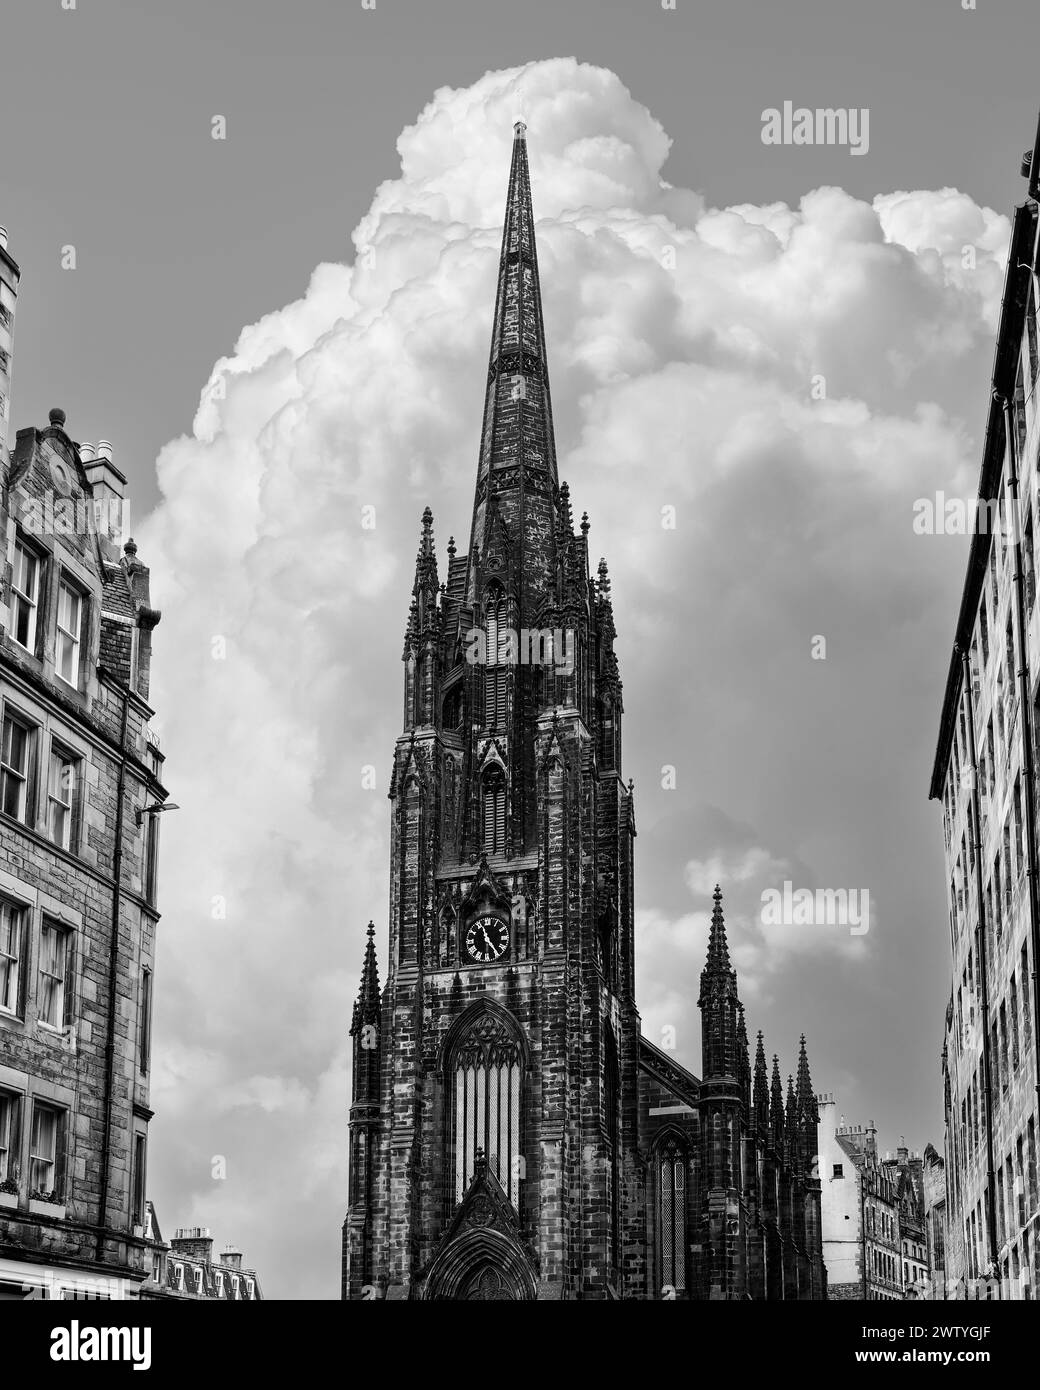 Capture en noir et blanc de l'horizon d'Édimbourg dominé par l'imposante flèche gothique Hub, parfaitement alignée avec les nuages de cumulus montants Banque D'Images